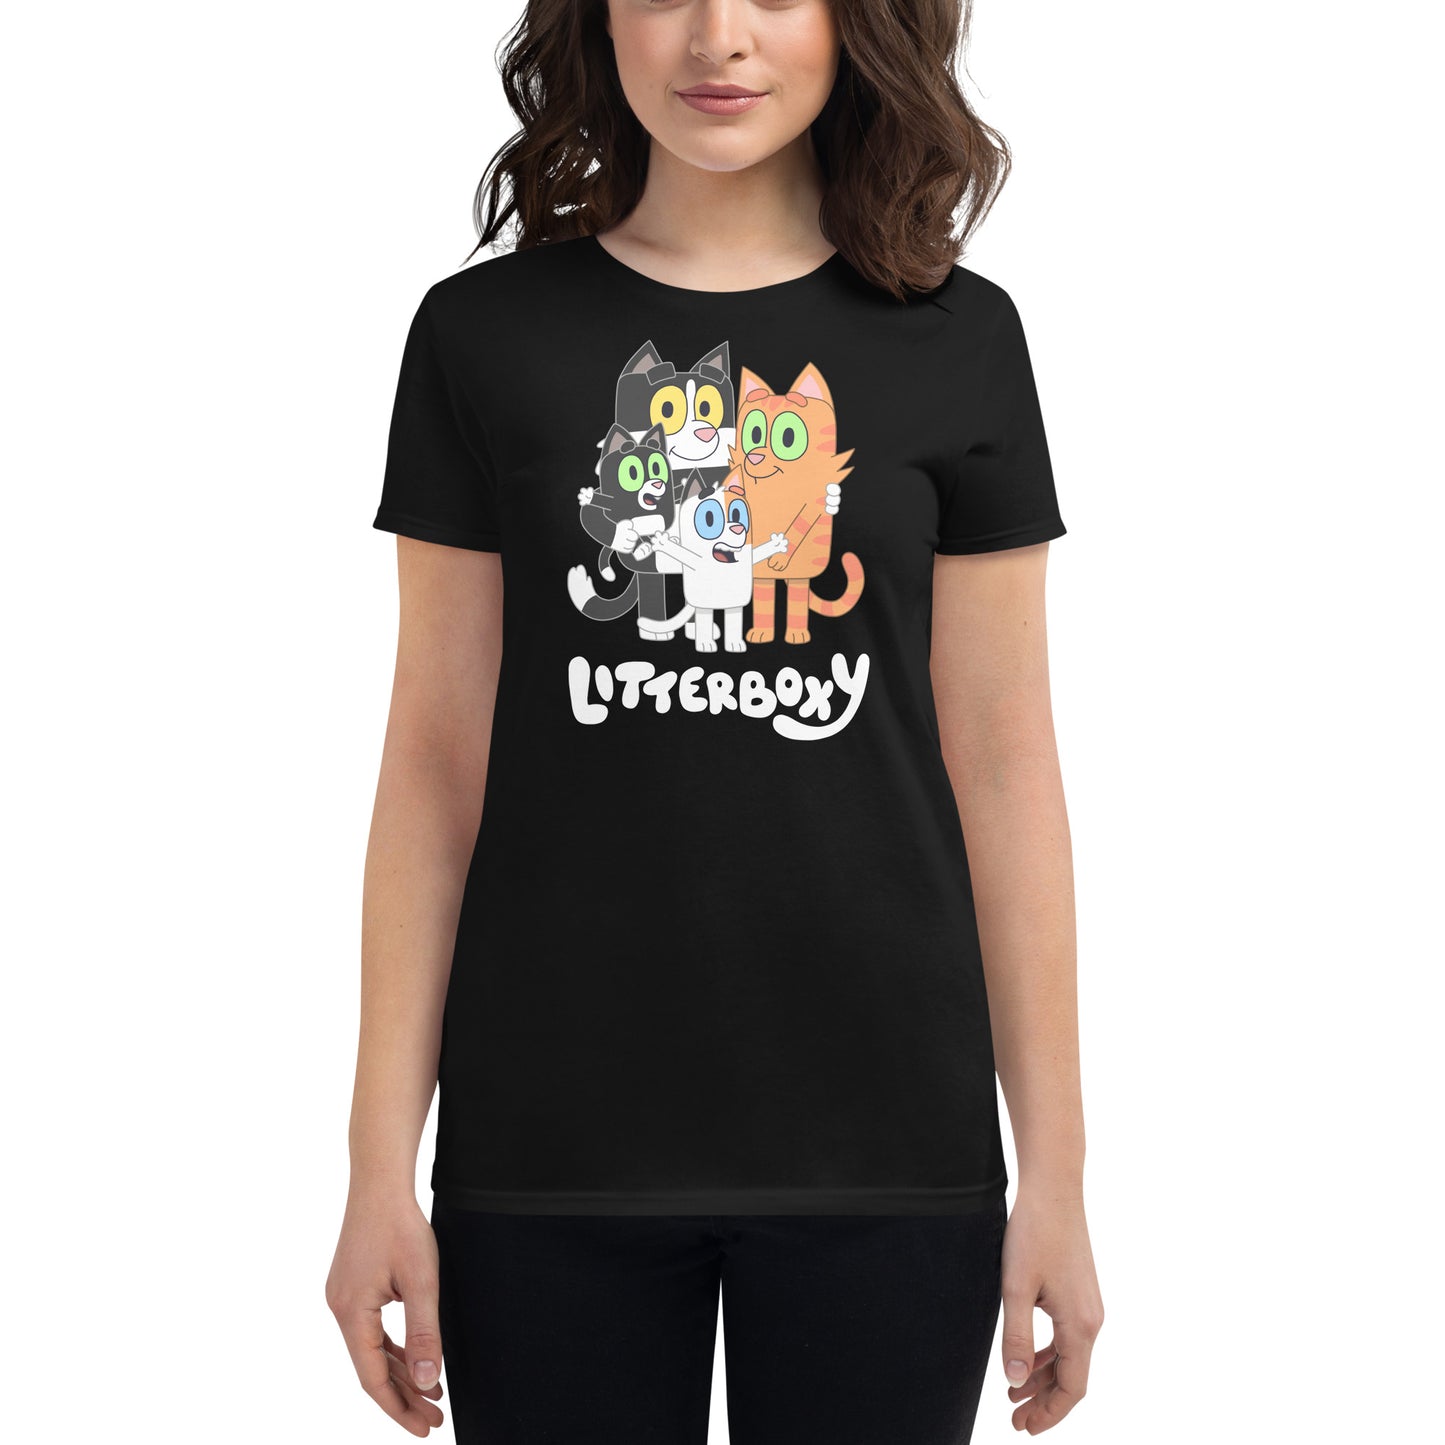 Litterboxy Family Women's T-Shirt